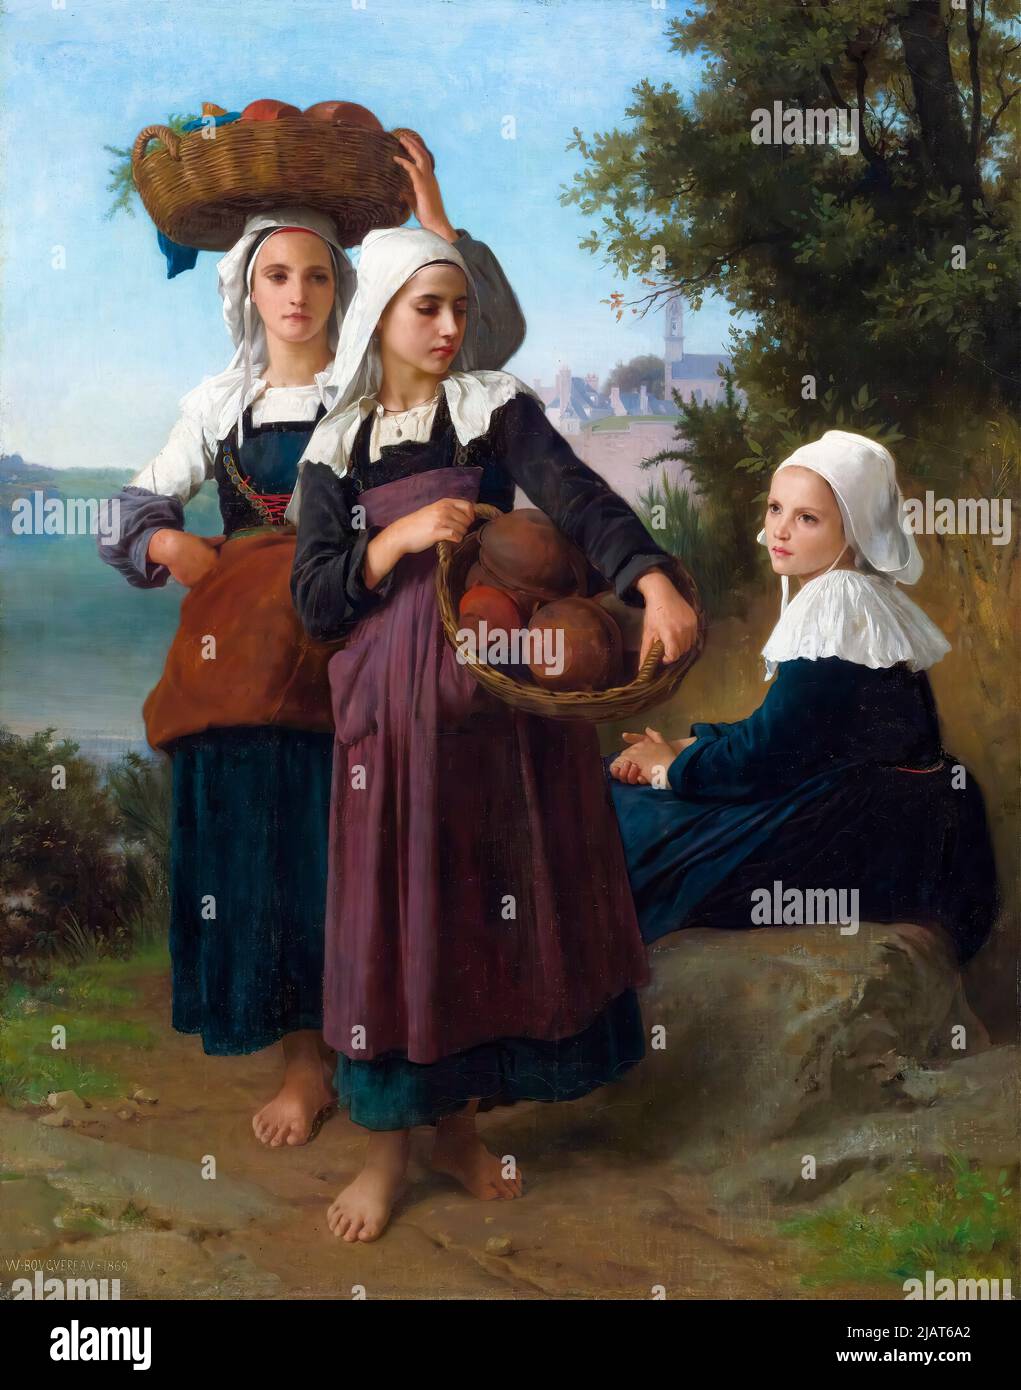 William Adolphe Bouguereau, jeunes filles de Fouesnant, revenant du marché, peinture à l'huile sur toile, 1869 Banque D'Images